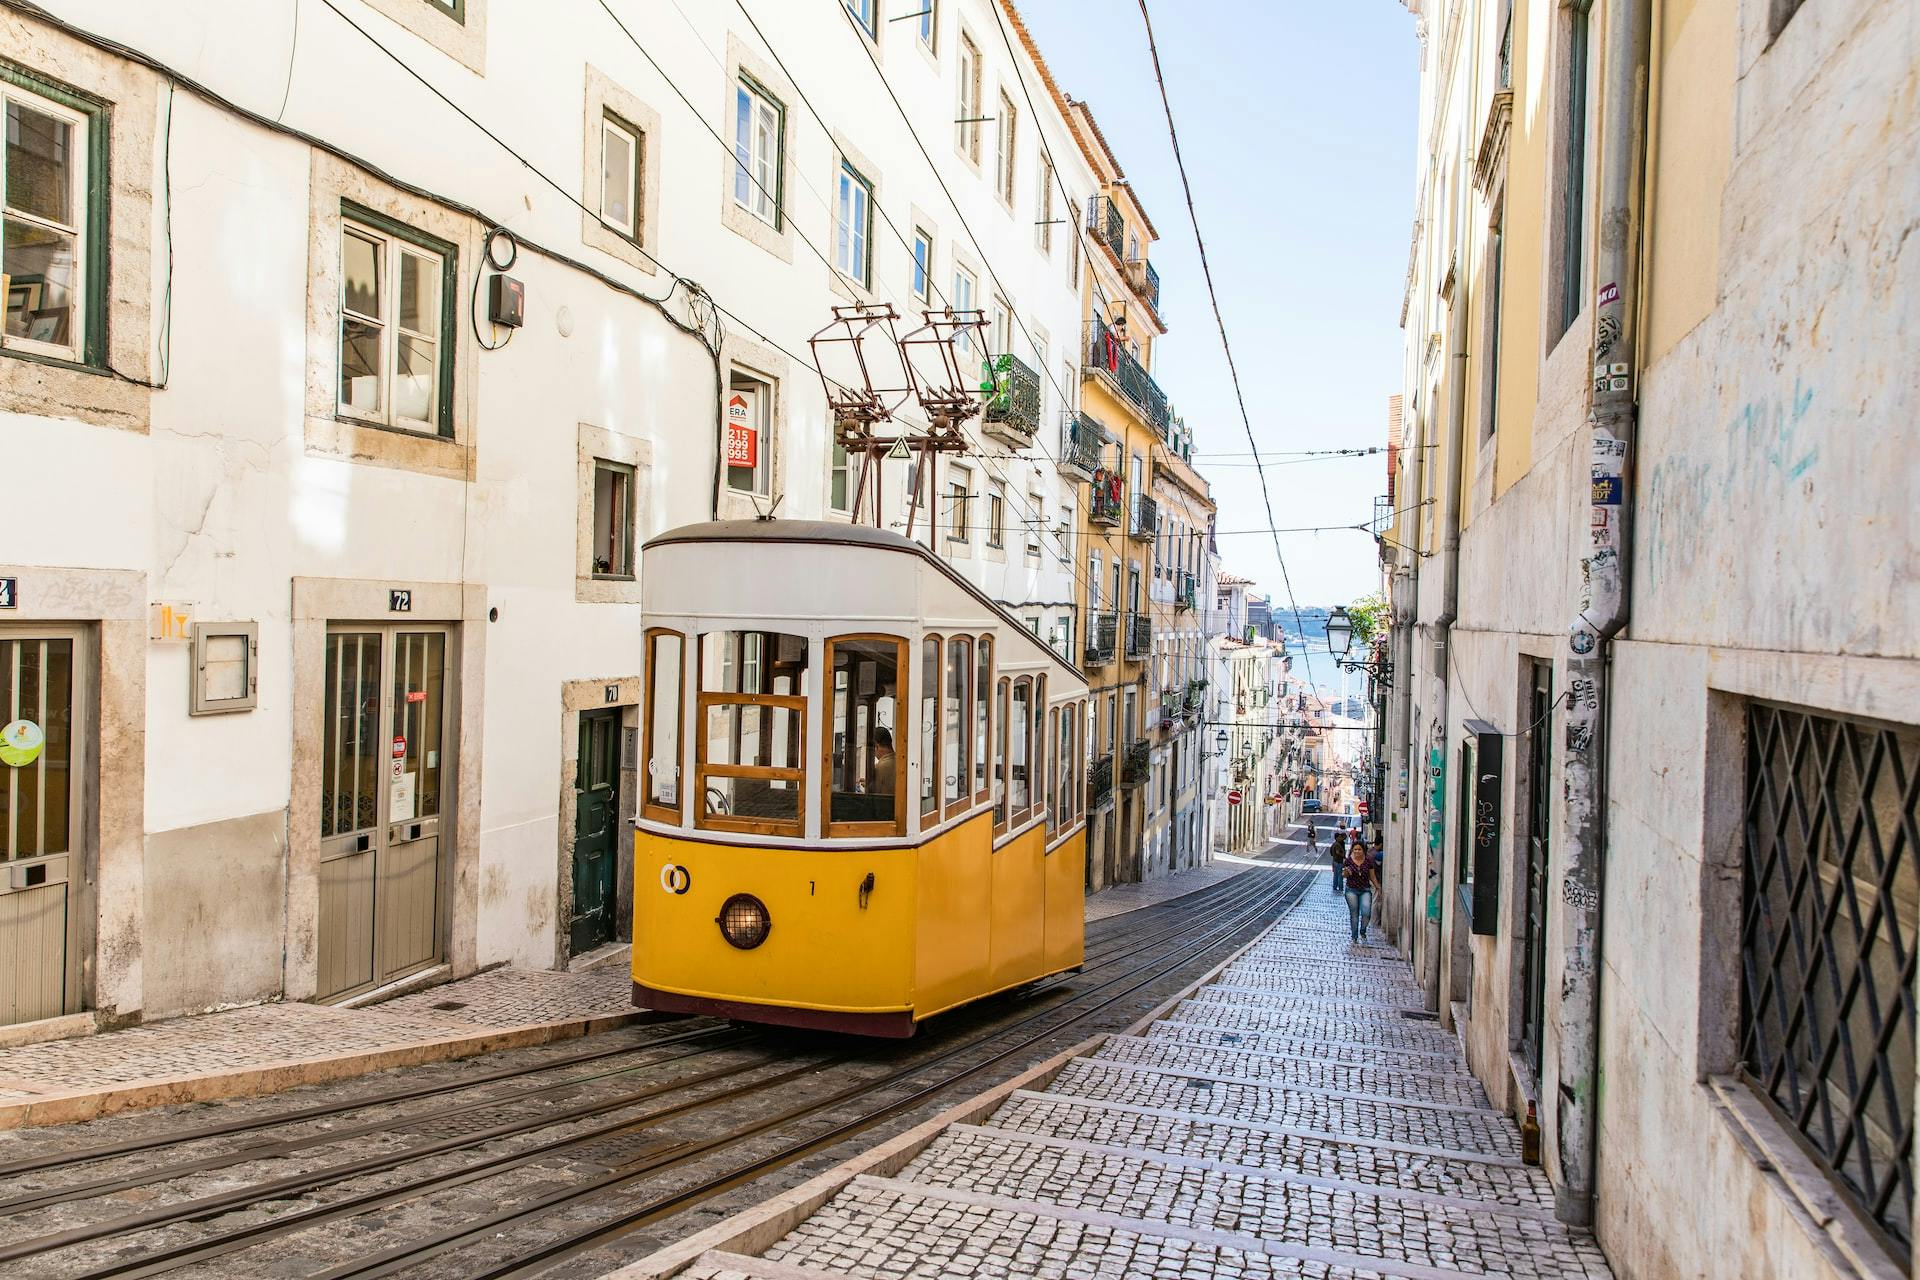 Lisbon for a digital nomad trip